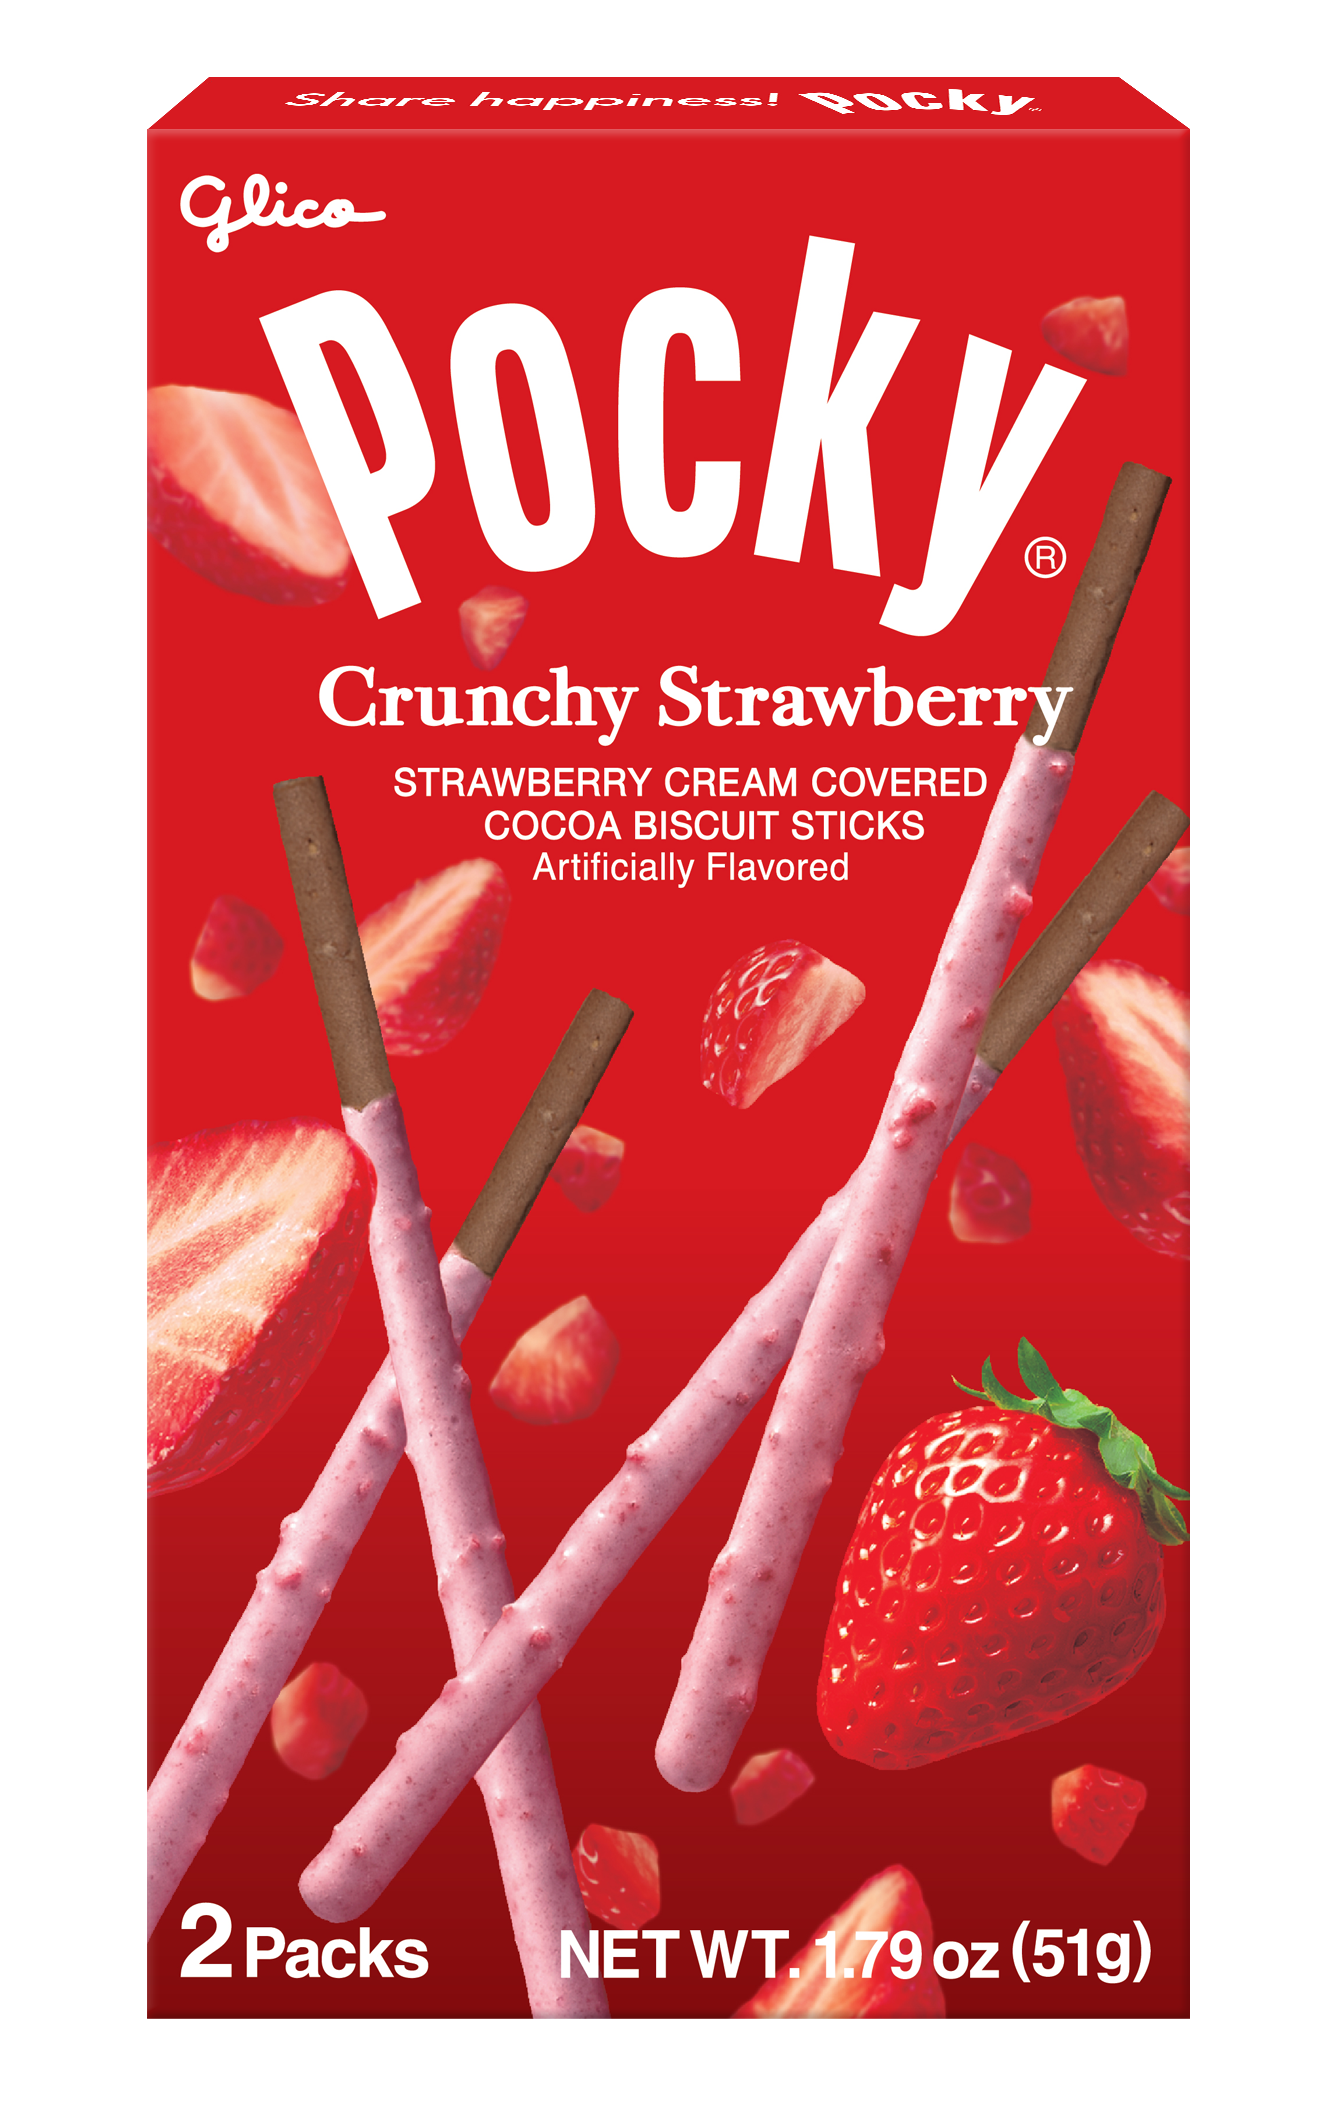 Pocky Crunchy Strawberry  Ezaki Glico USA Corporation